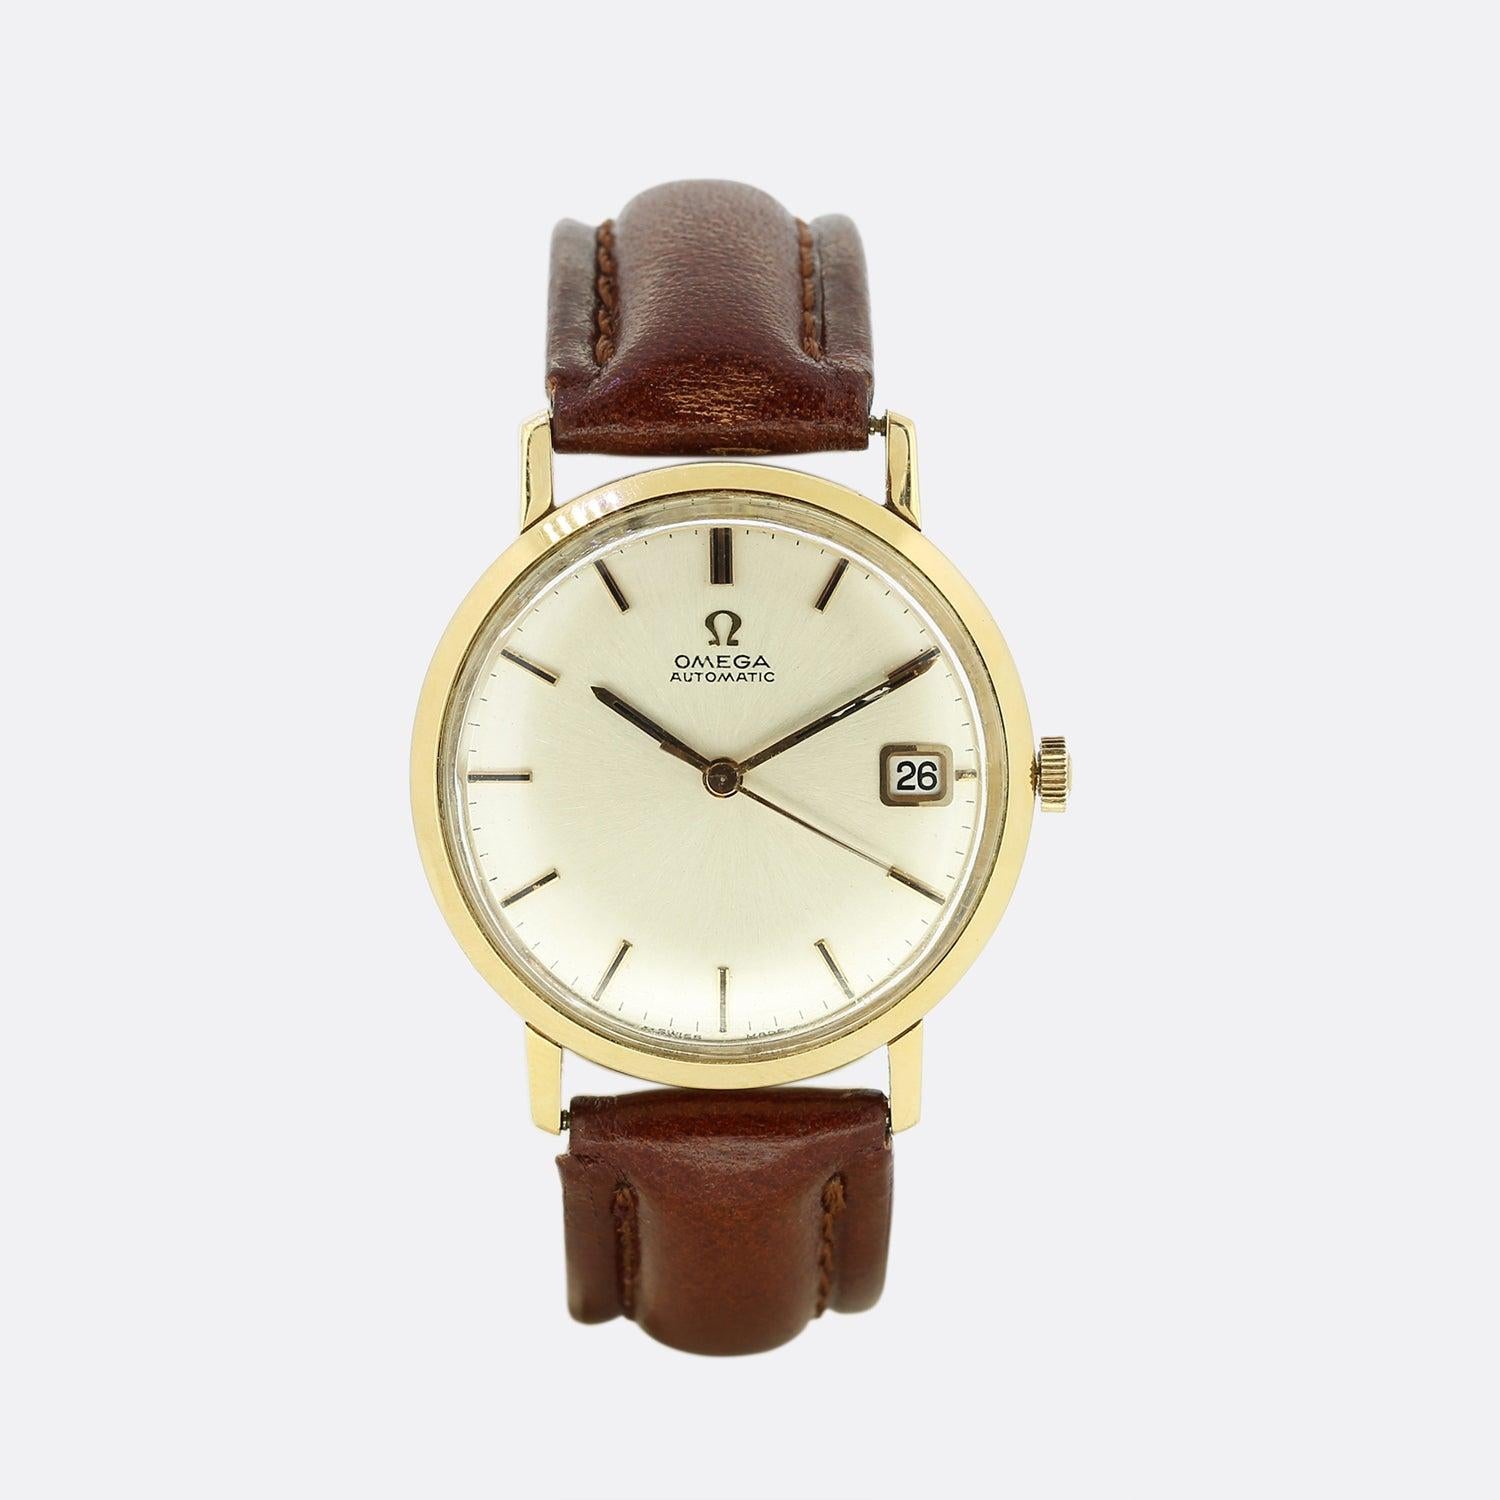 Dies ist ein Jahrgang 18ct Gelbgold Omega automatische Armbanduhr. Die Uhr verfügt über alle Originalteile wie Gehäuse, Zifferblatt und Krone. Der Gurt wurde jedoch irgendwann einmal ersetzt. 

Die klassischen Zeitmesser von Omega wurden im Laufe